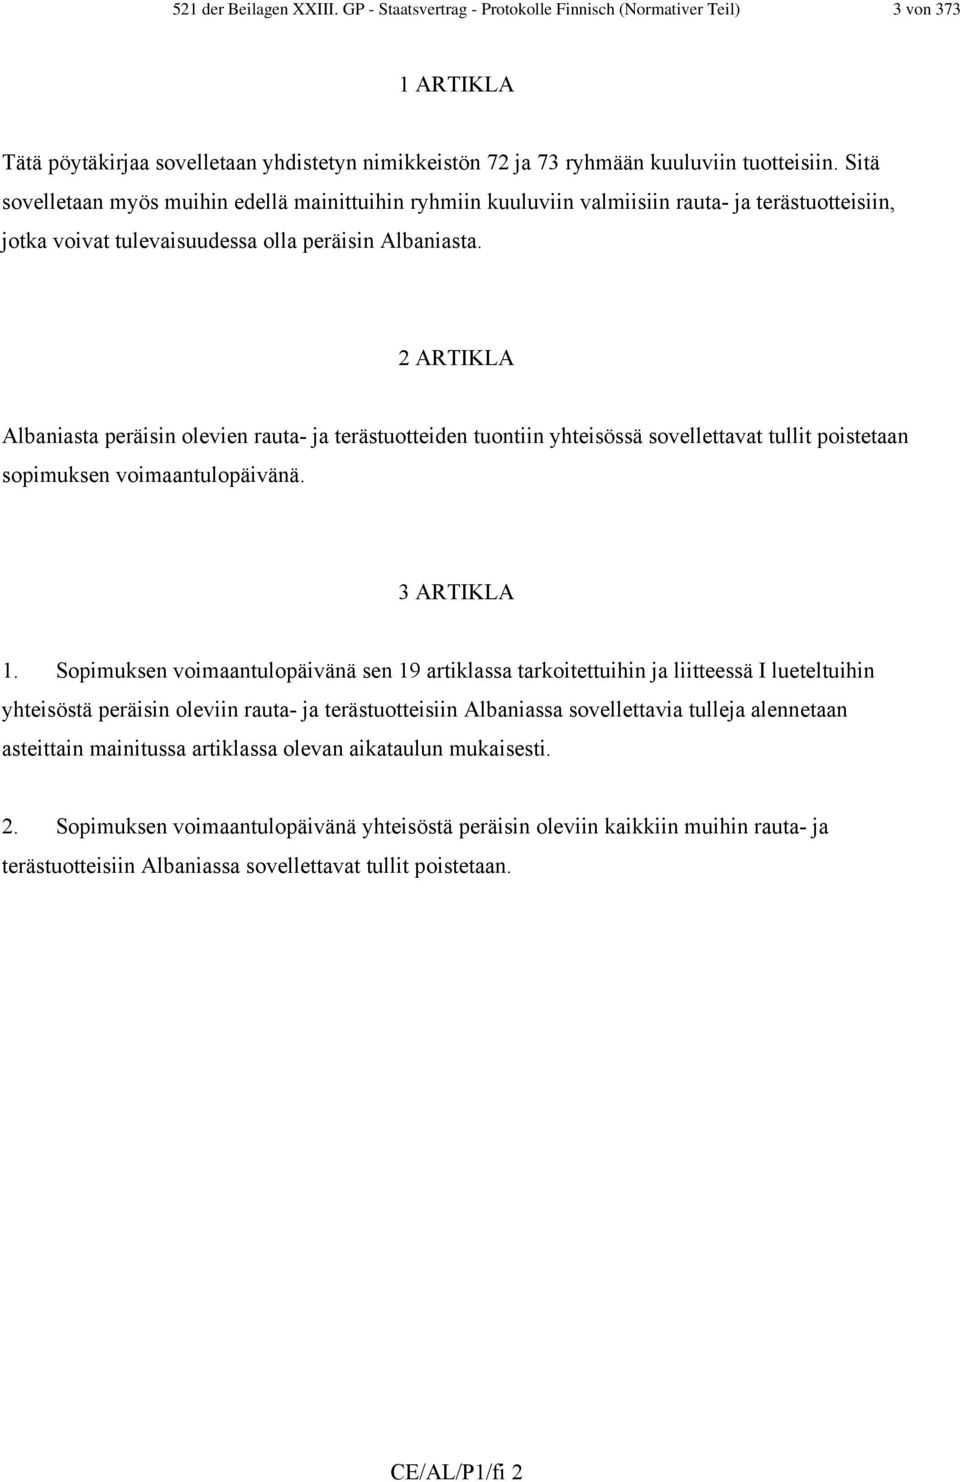 2 ARTIKLA Albaniasta peräisin olevien rauta- ja terästuotteiden tuontiin yhteisössä sovellettavat tullit poistetaan sopimuksen voimaantulopäivänä. 3 ARTIKLA 1.